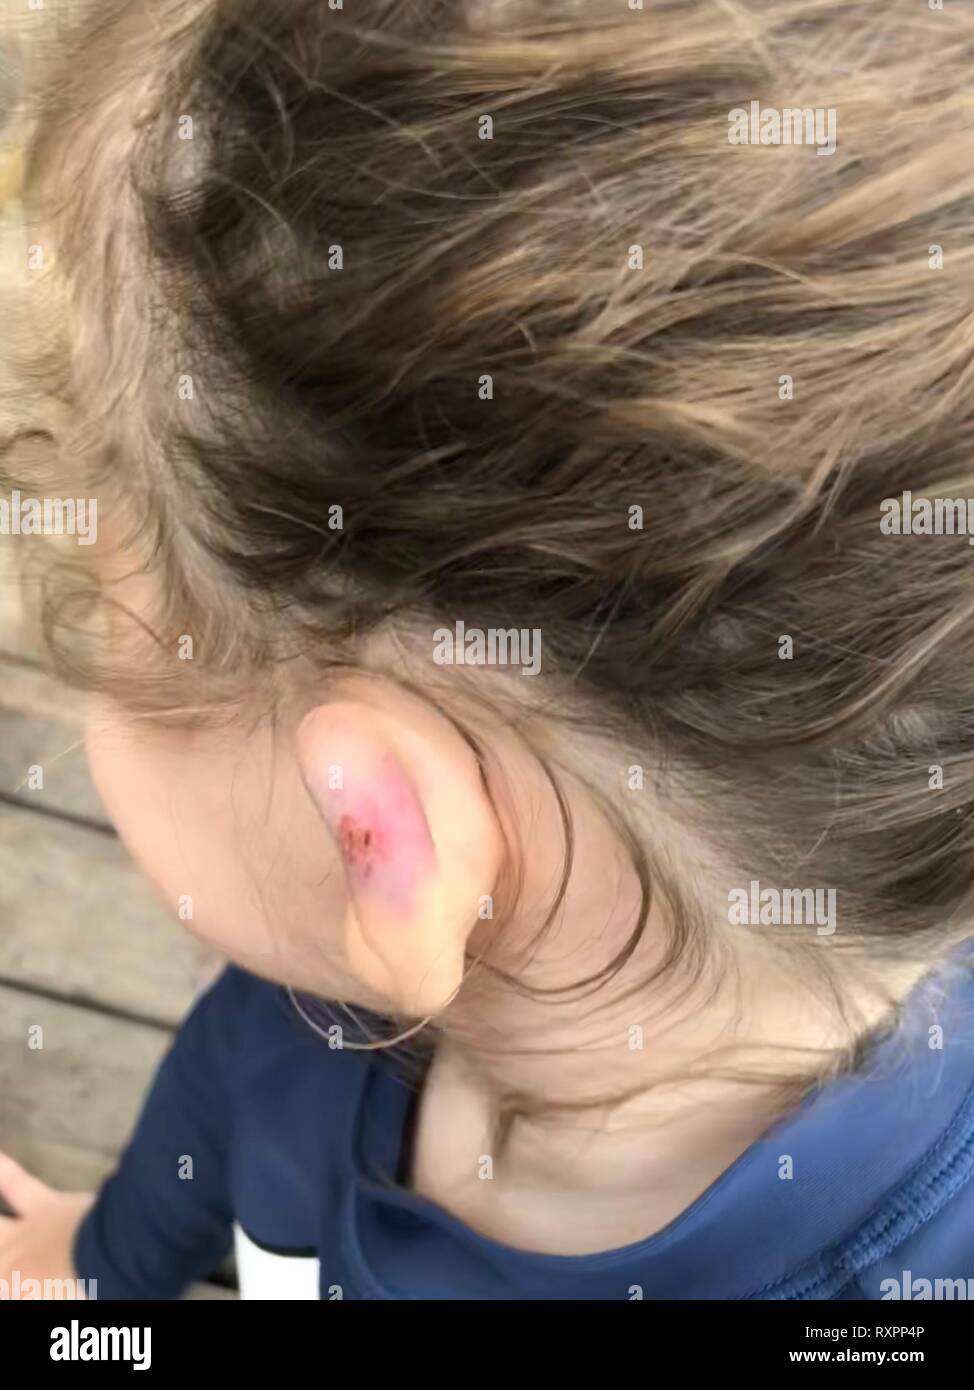 Une vue en gros plan d'une petite oreille filles qui a un été blessé, il y  a coupure et la zone endommagée est très broosed Photo Stock - Alamy